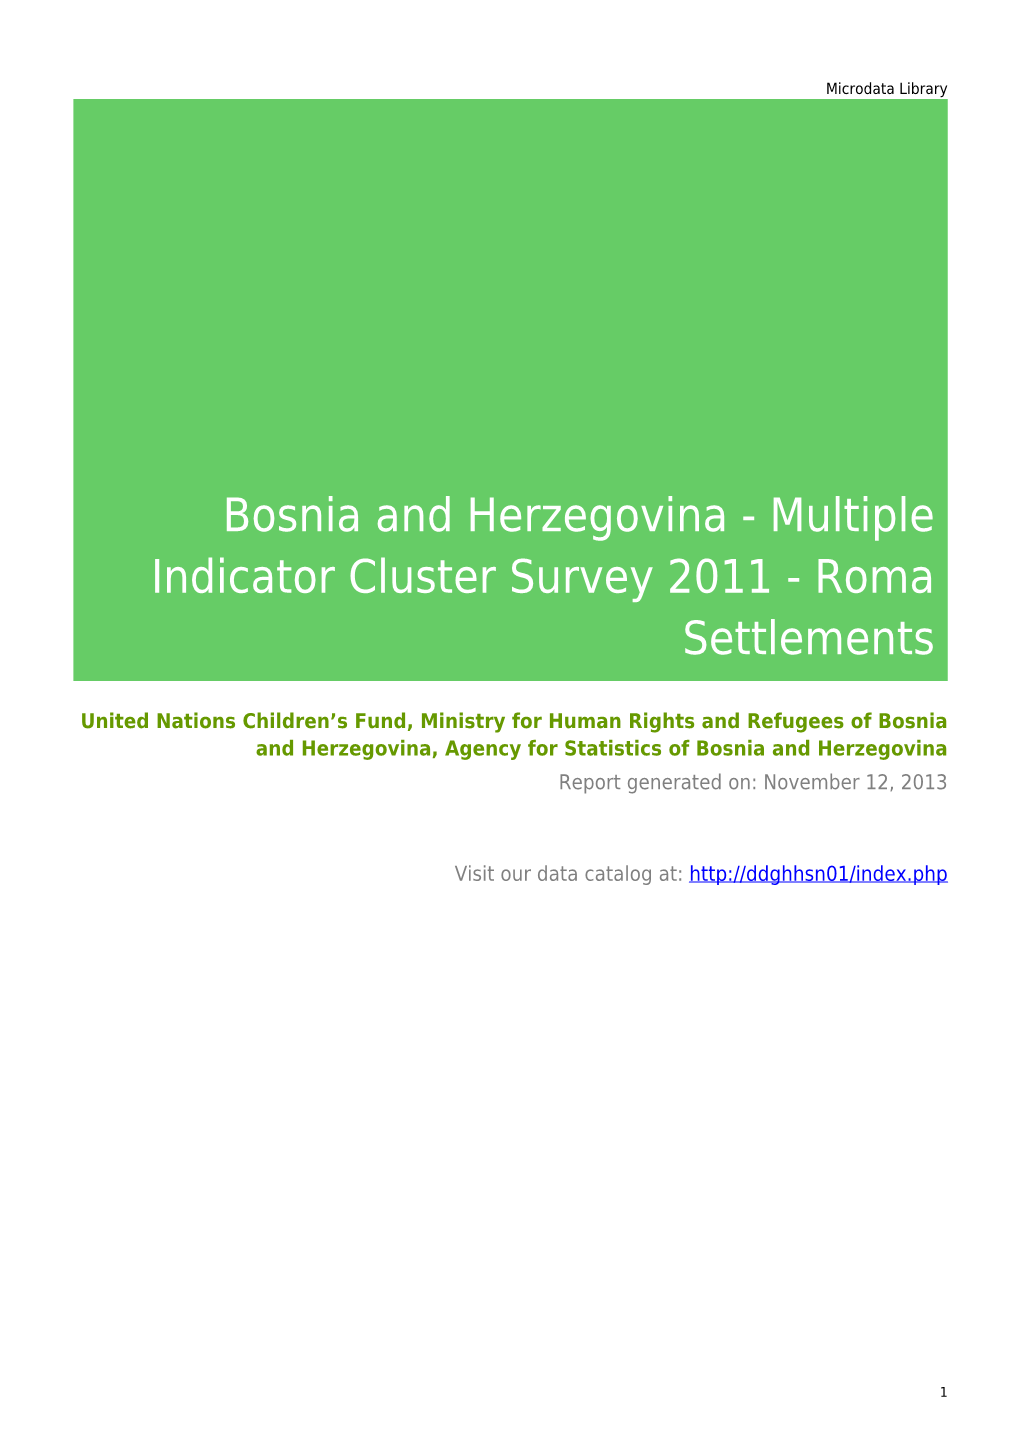 Bosnia and Herzegovina - Multiple Indicator Cluster Survey 2011 - Roma Settlements